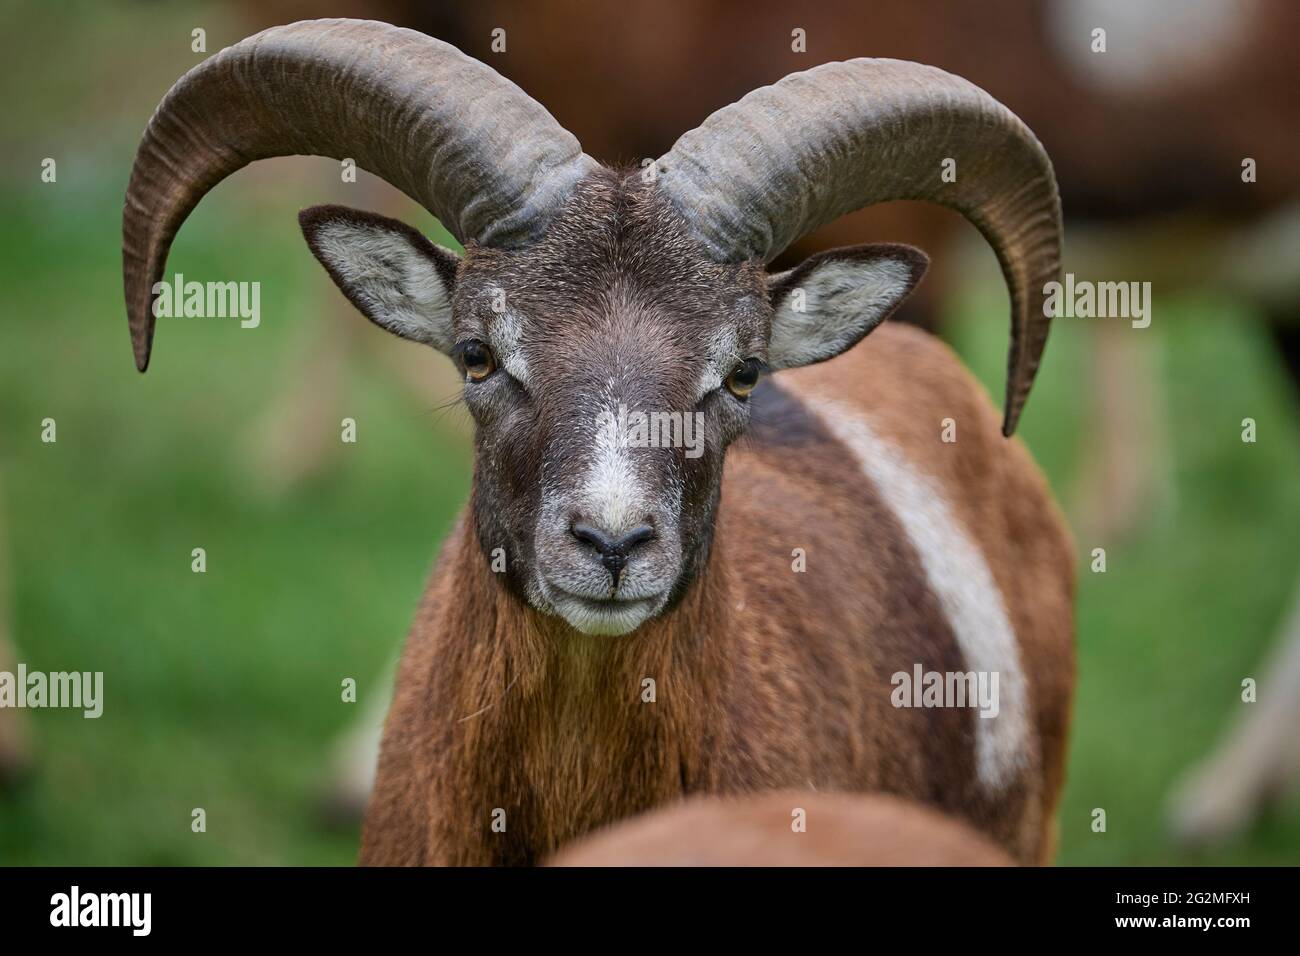 Mouflon, Ovis musimon, Ram portrait Stock Photo